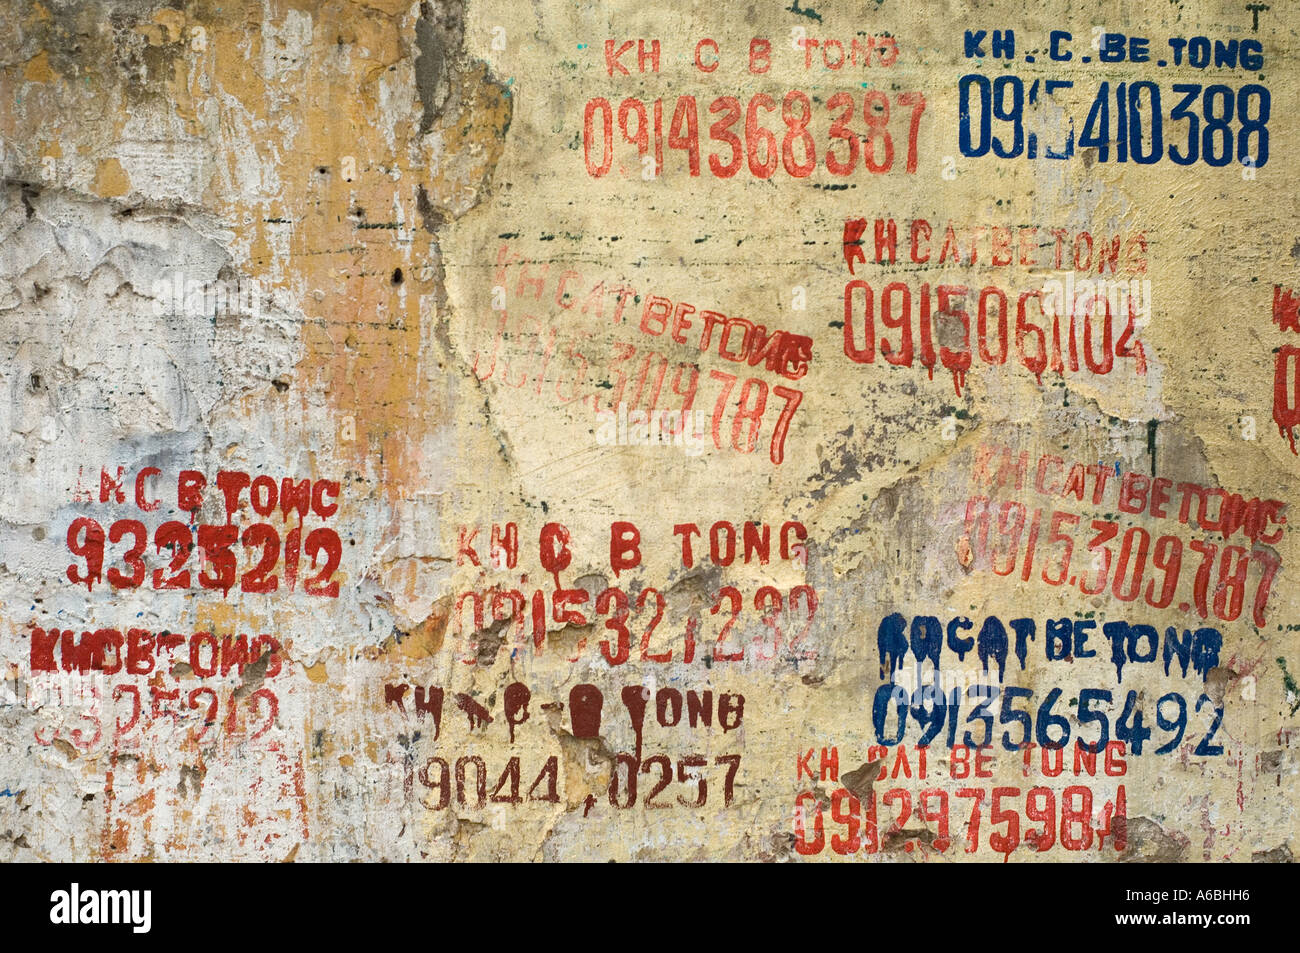 Un vieux mur à Hanoi Vietnam avec des numéros de téléphone peint sur elle Banque D'Images